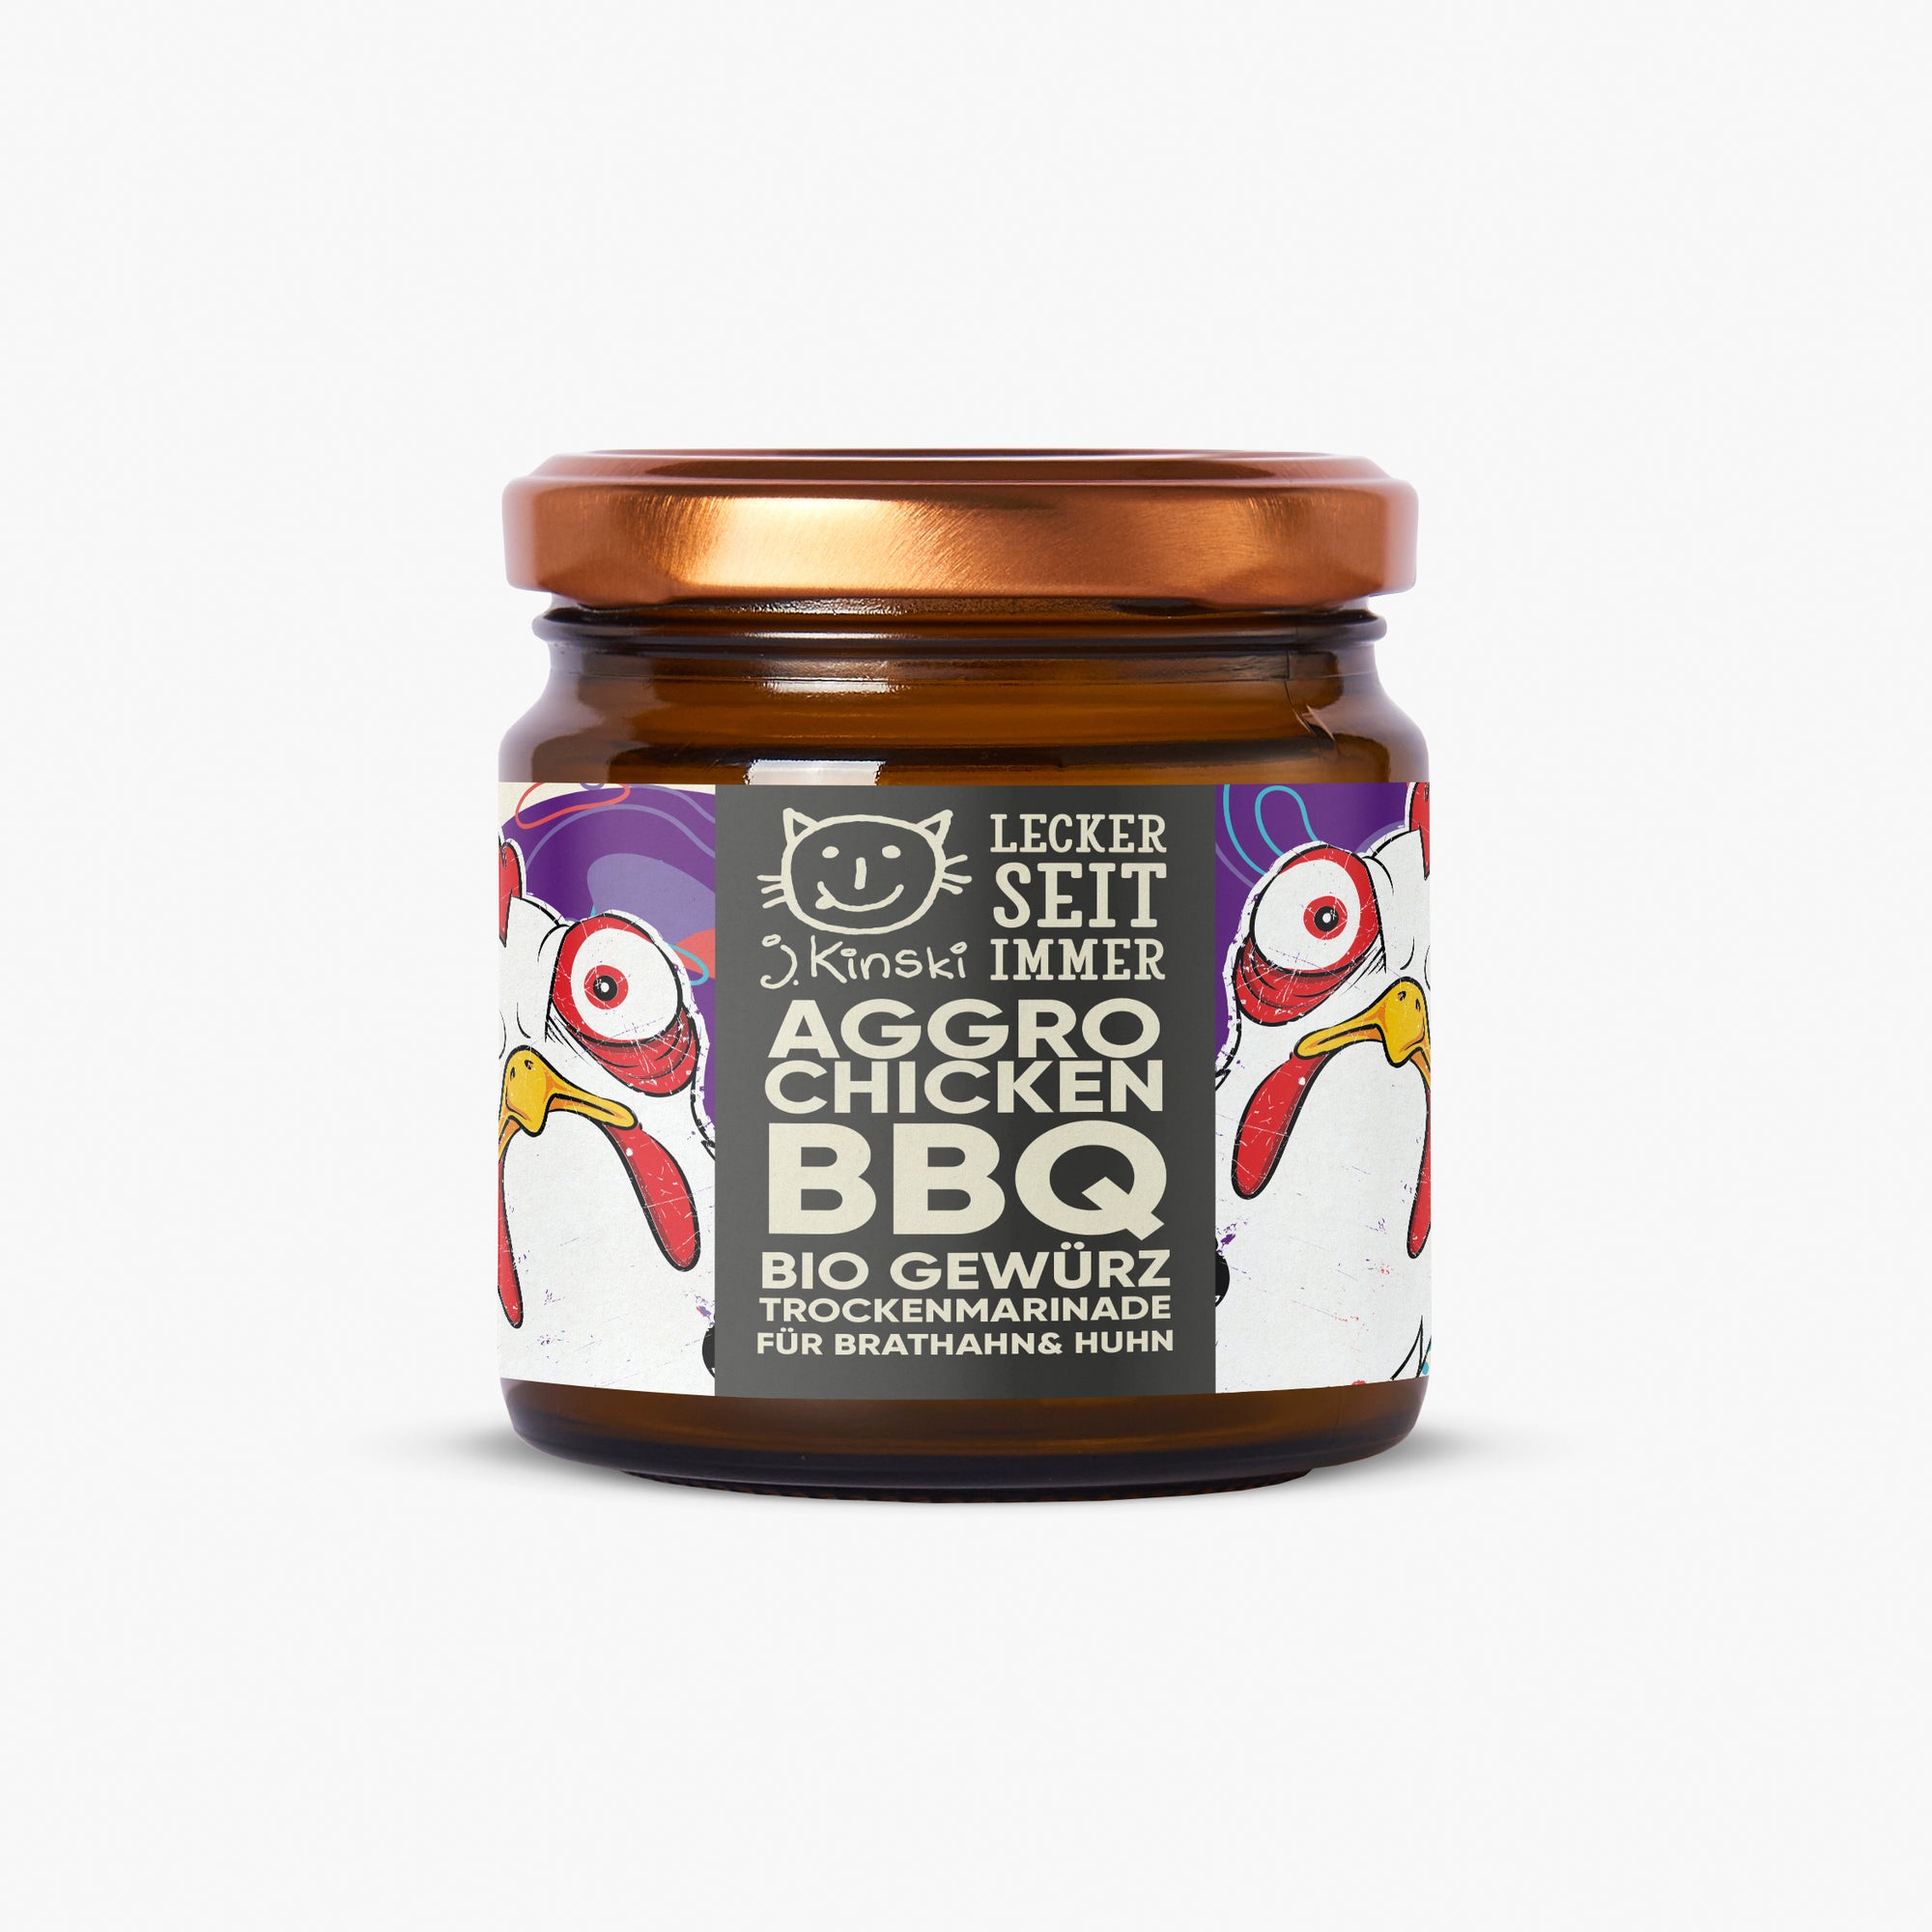 Aggro Chicken BBQ Bio Gewürzsalz 125g